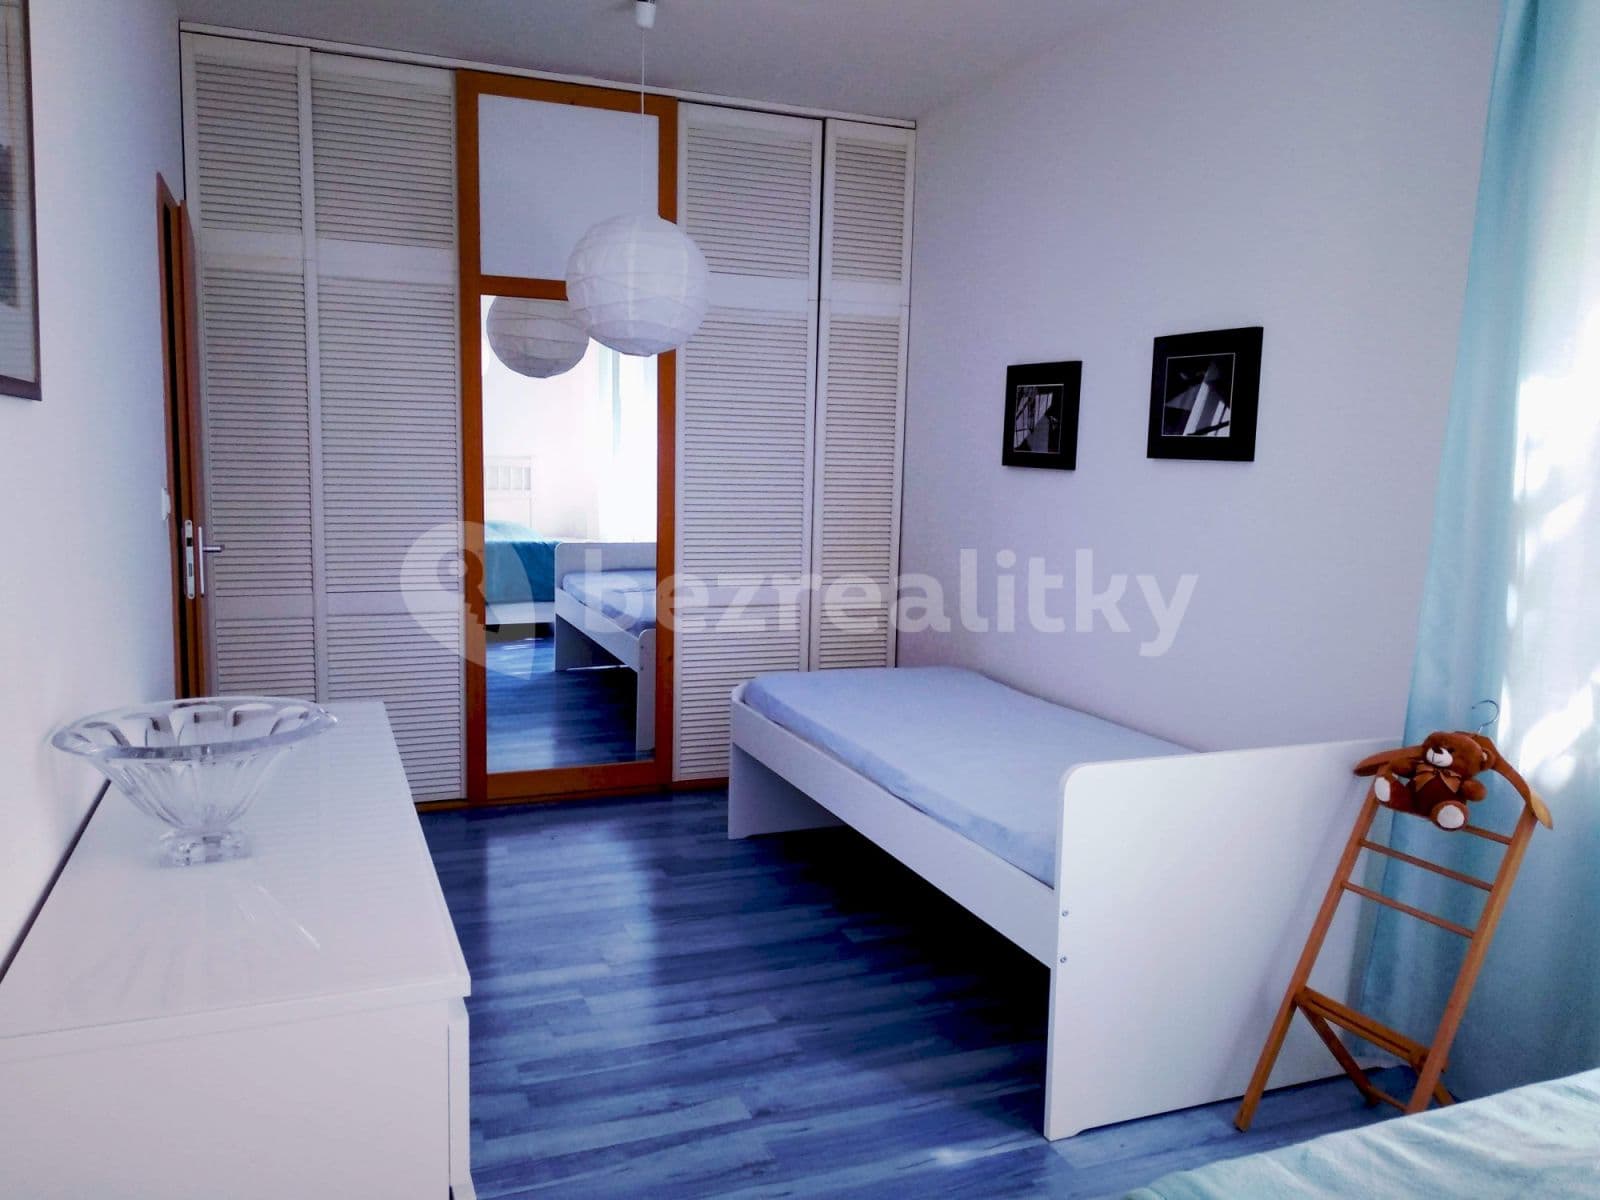 2 bedroom flat to rent, 67 m², V Zahradách, Prague, Prague